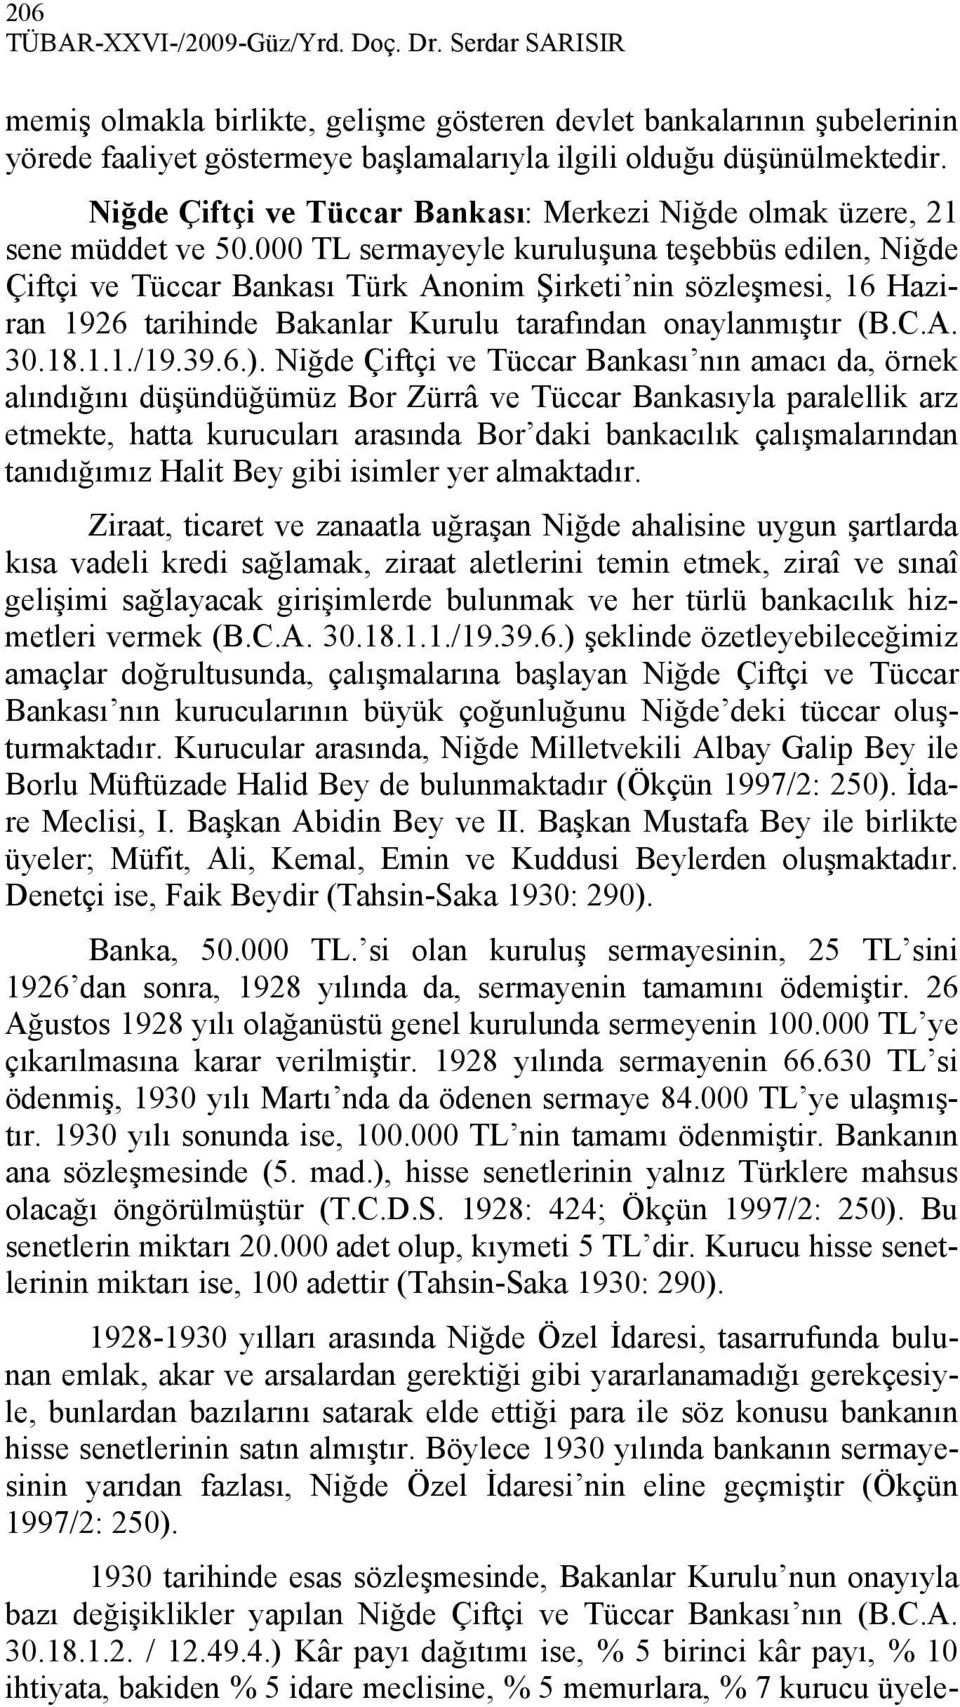 000 TL sermayeyle kuruluşuna teşebbüs edilen, Niğde Çiftçi ve Tüccar Bankası Türk Anonim Şirketi nin sözleşmesi, 16 Haziran 1926 tarihinde Bakanlar Kurulu tarafından onaylanmıştır (B.C.A. 30.18.1.1./19.